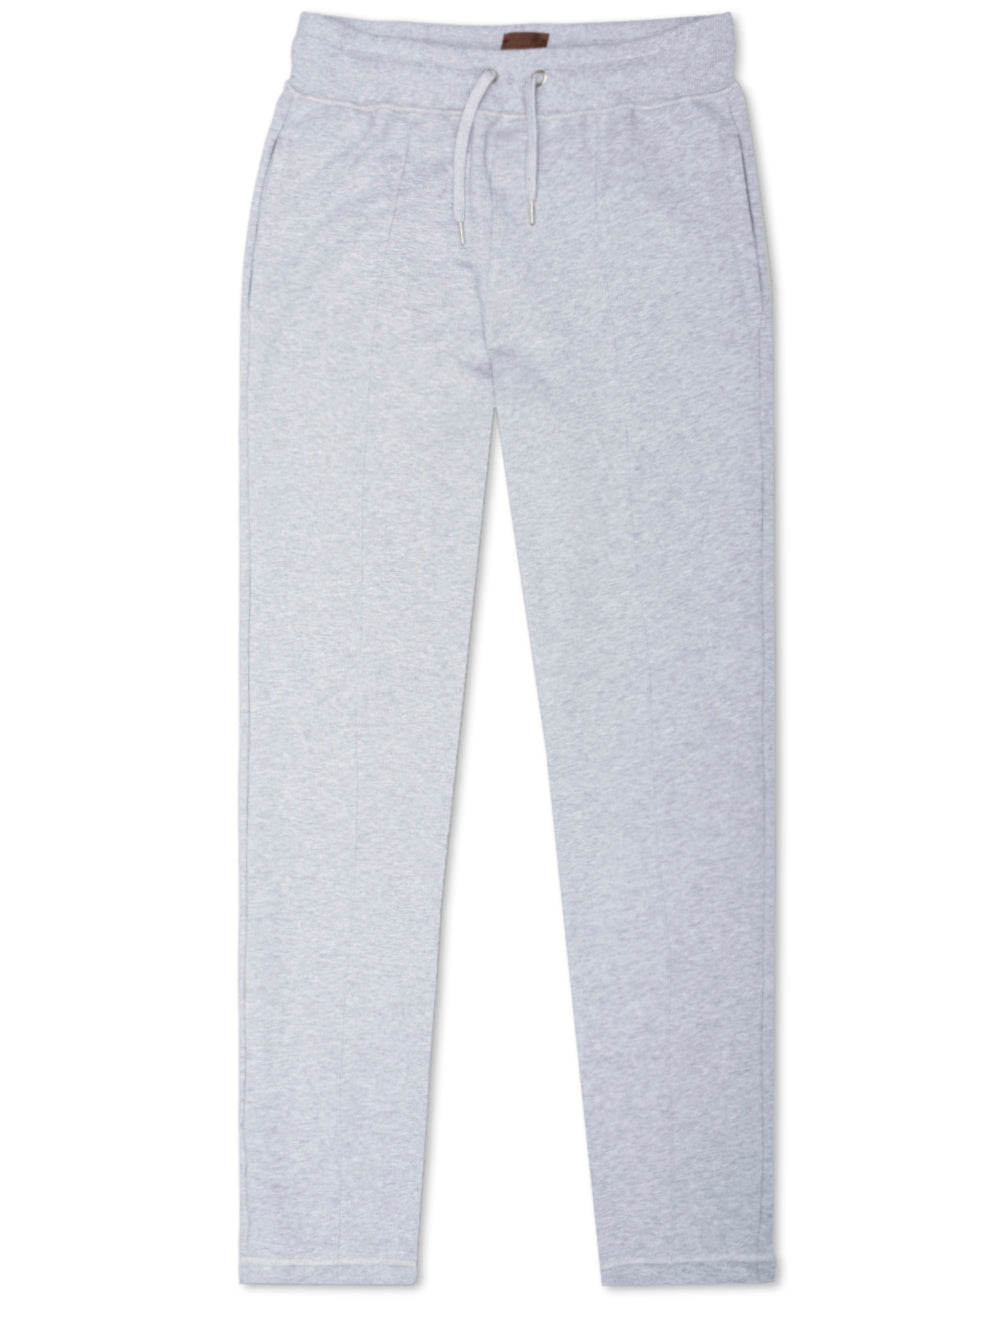 STENSTROMS Jersey Pants Grey